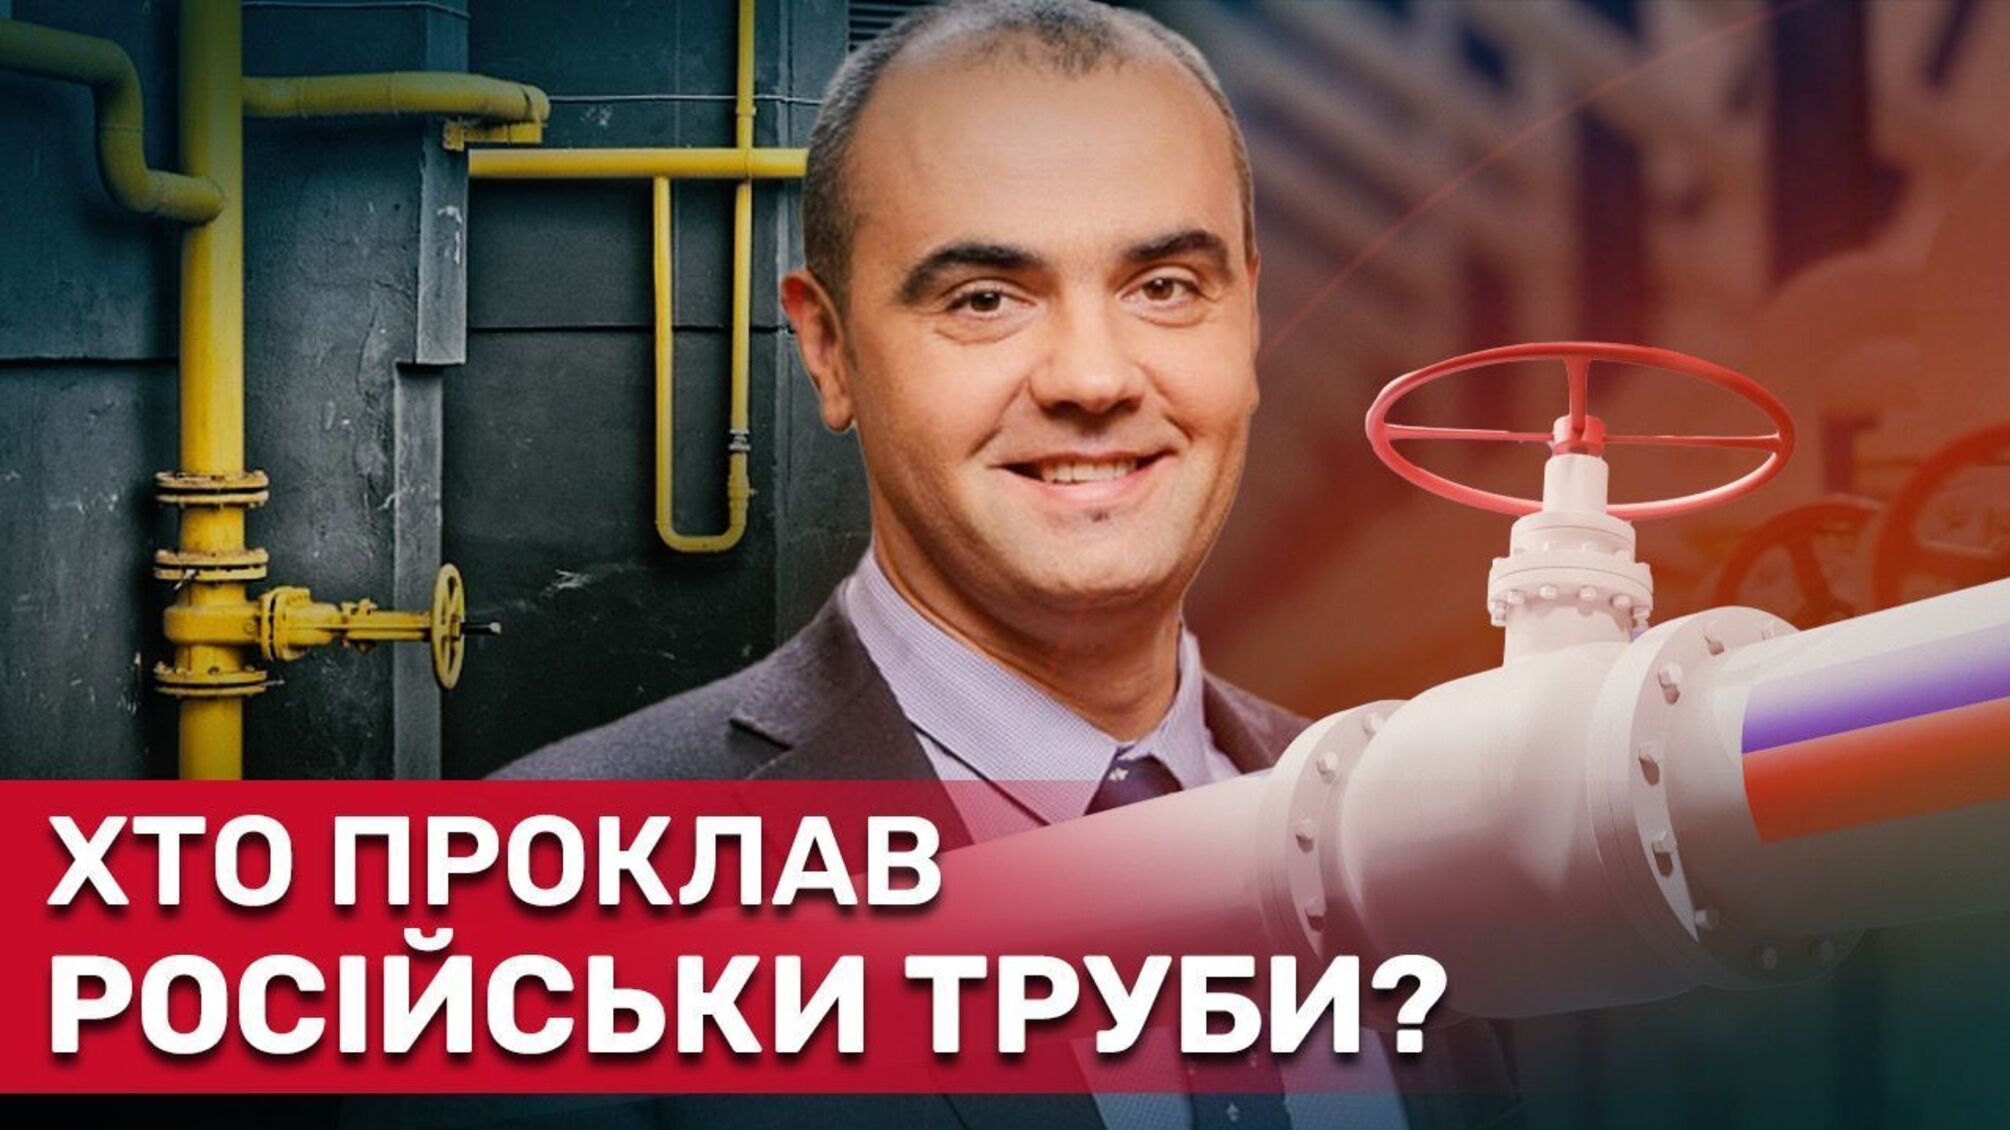 Экс-глава ОГТСУ Макогон способствовал закупке российских труб на 100 млн?